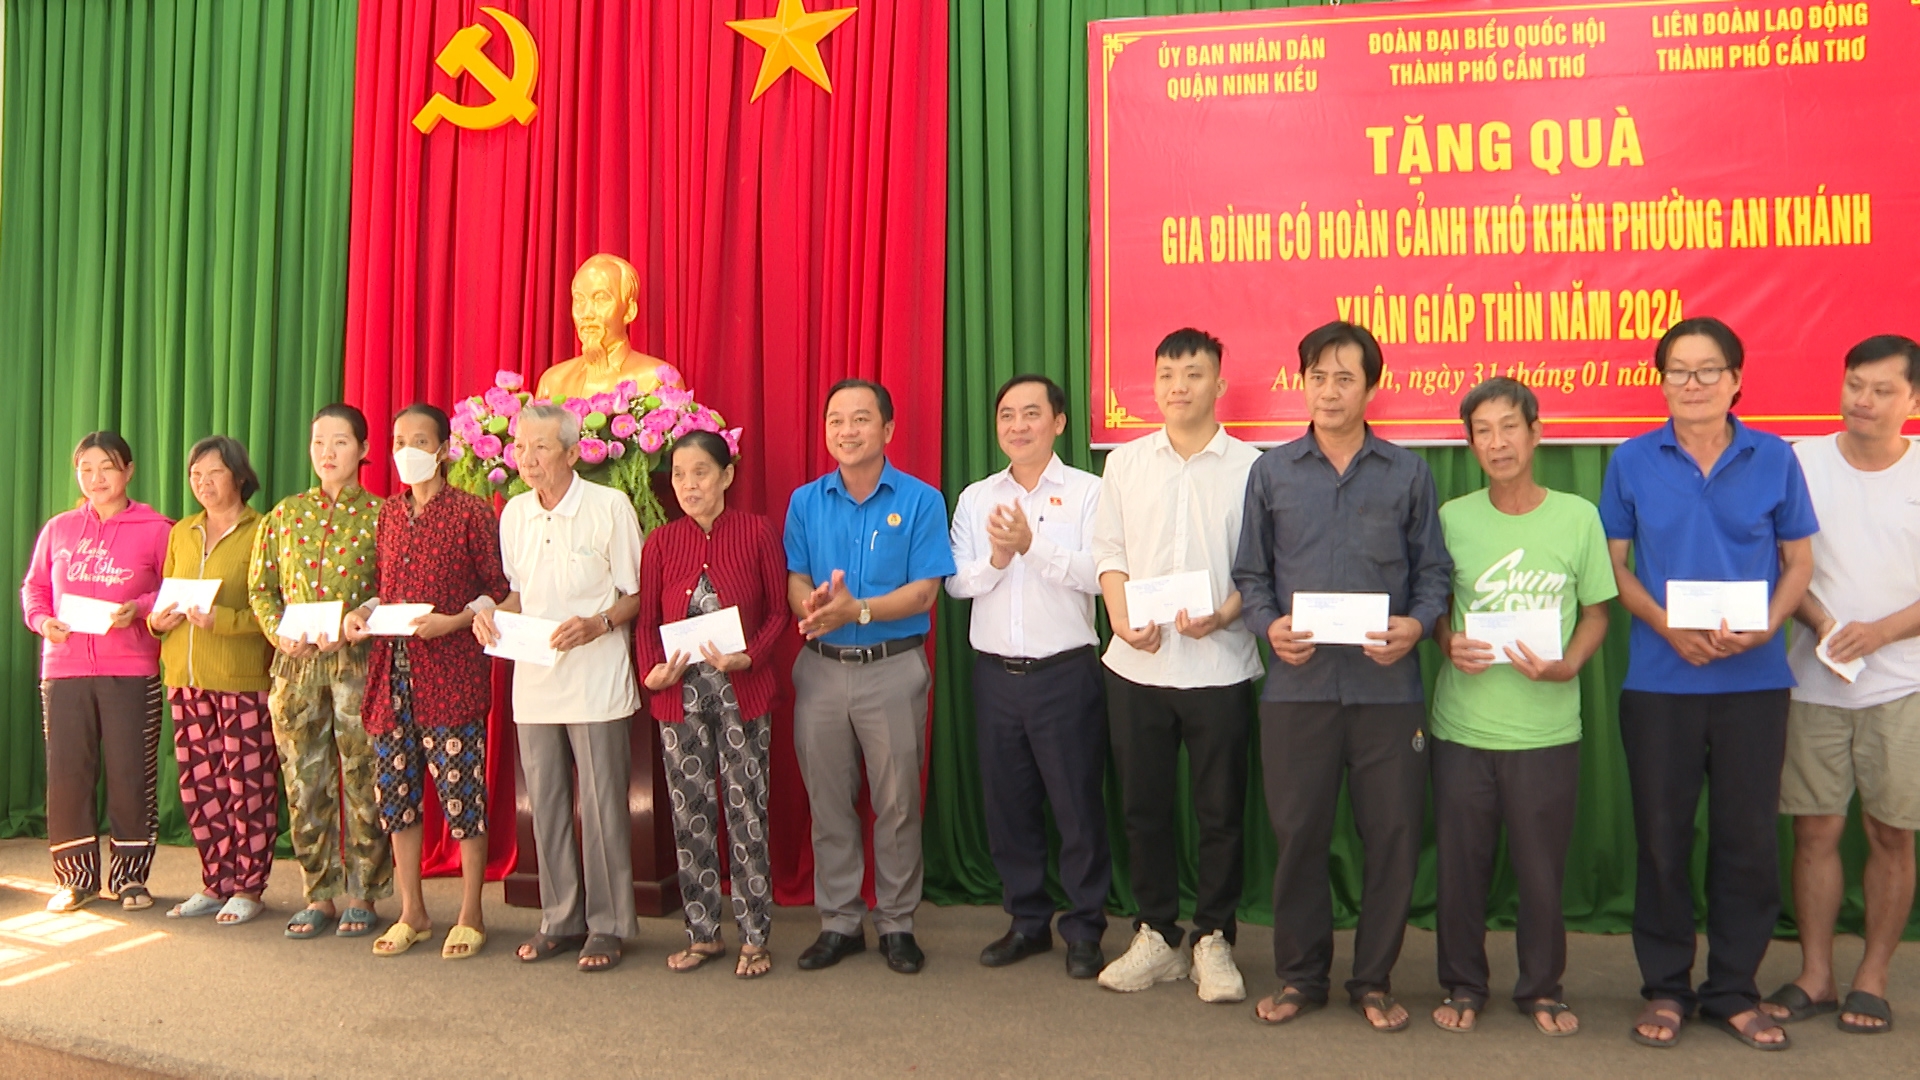 Ông Đào Chí nghĩa, Phó Trưởng đoàn đại biểu Quốc hội đơn vị thành phố Cần Thơ tặng quà cho các gia đình khó khăn phường An Khánh